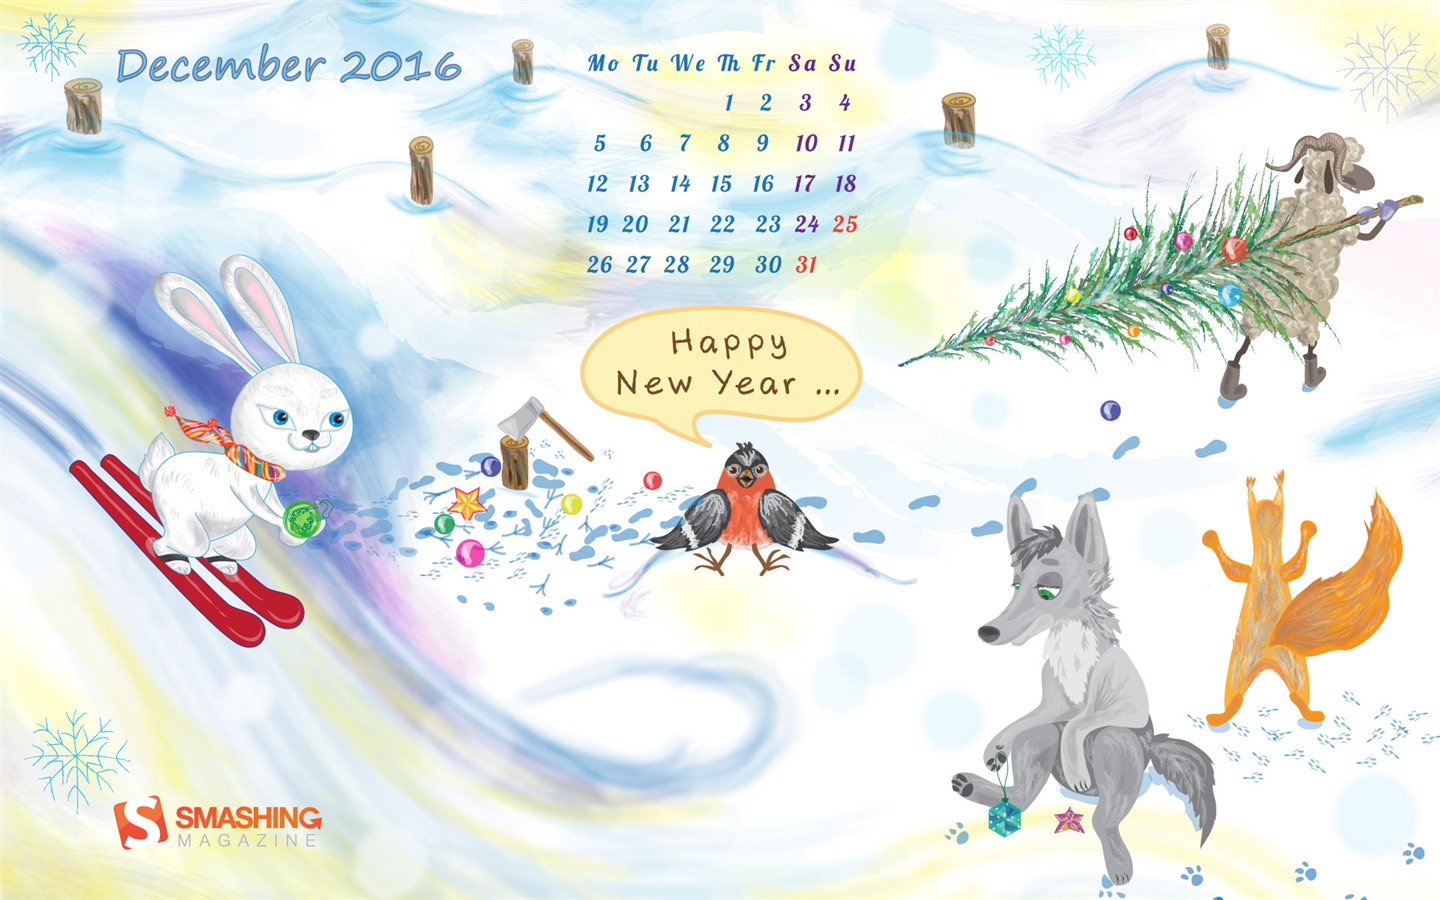 December 2016 Christmas theme calendar wallpaper (1) #27 - 1440x900